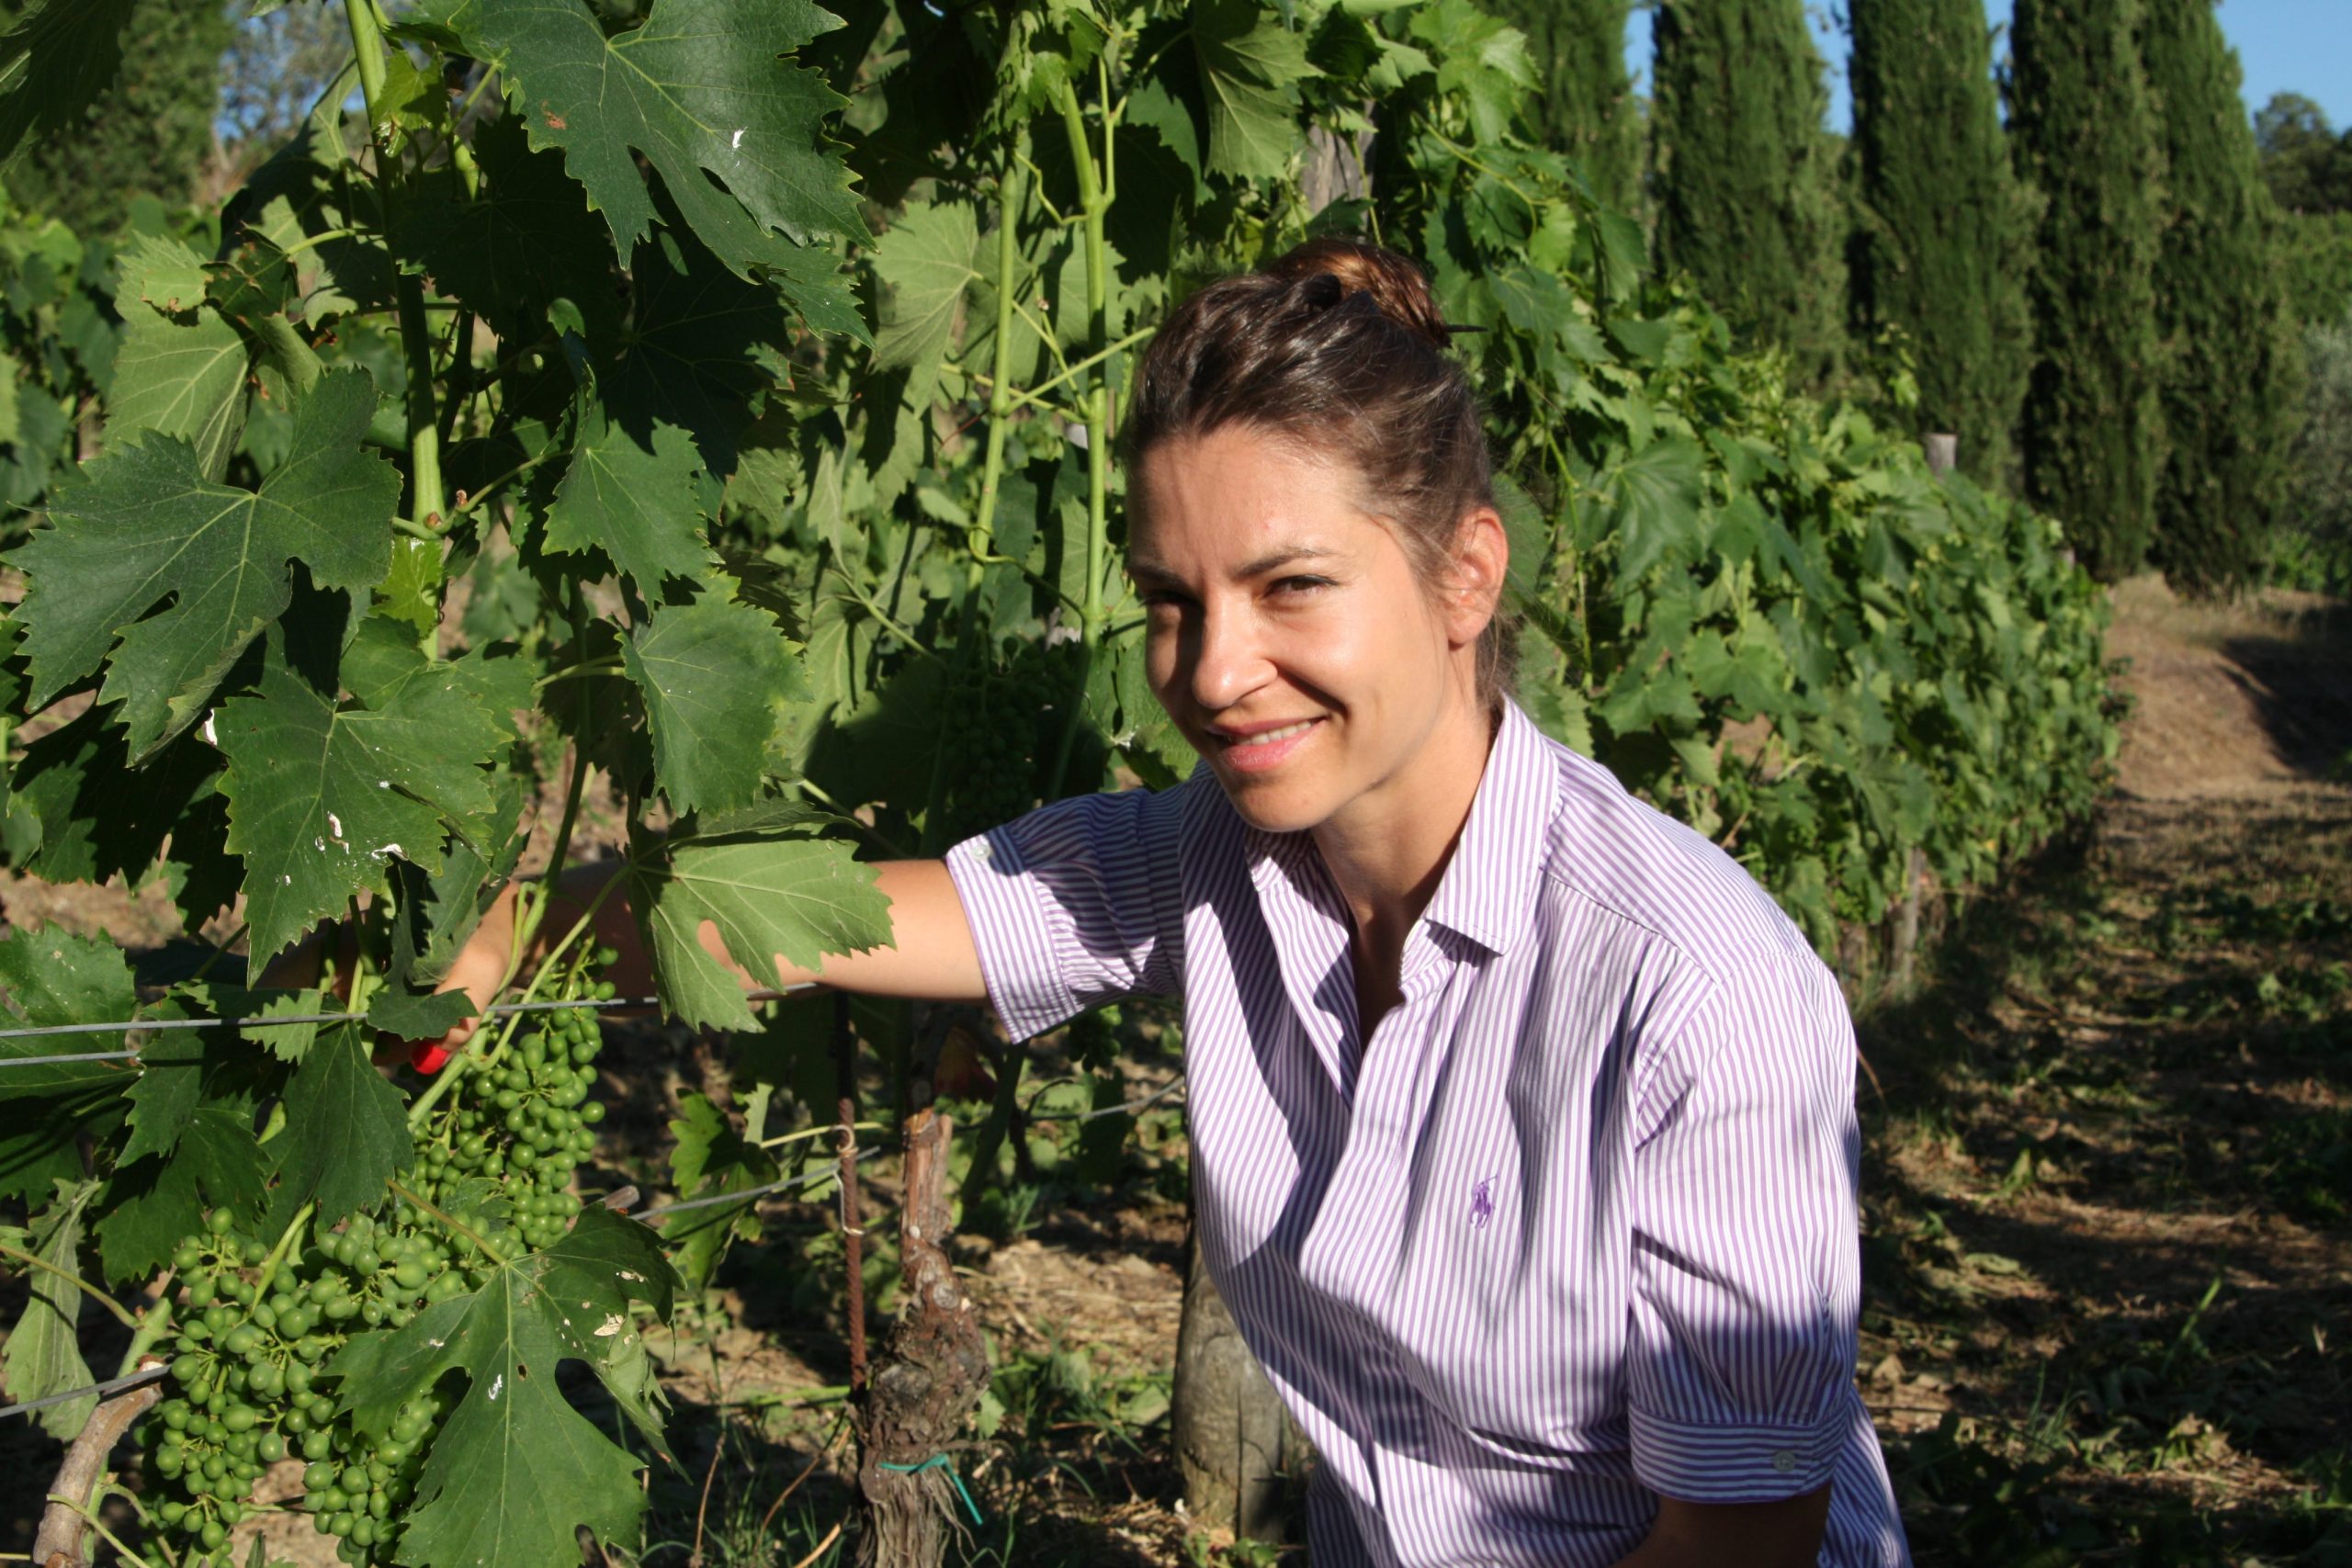 Valeria working in the Montemaggio Vineyard